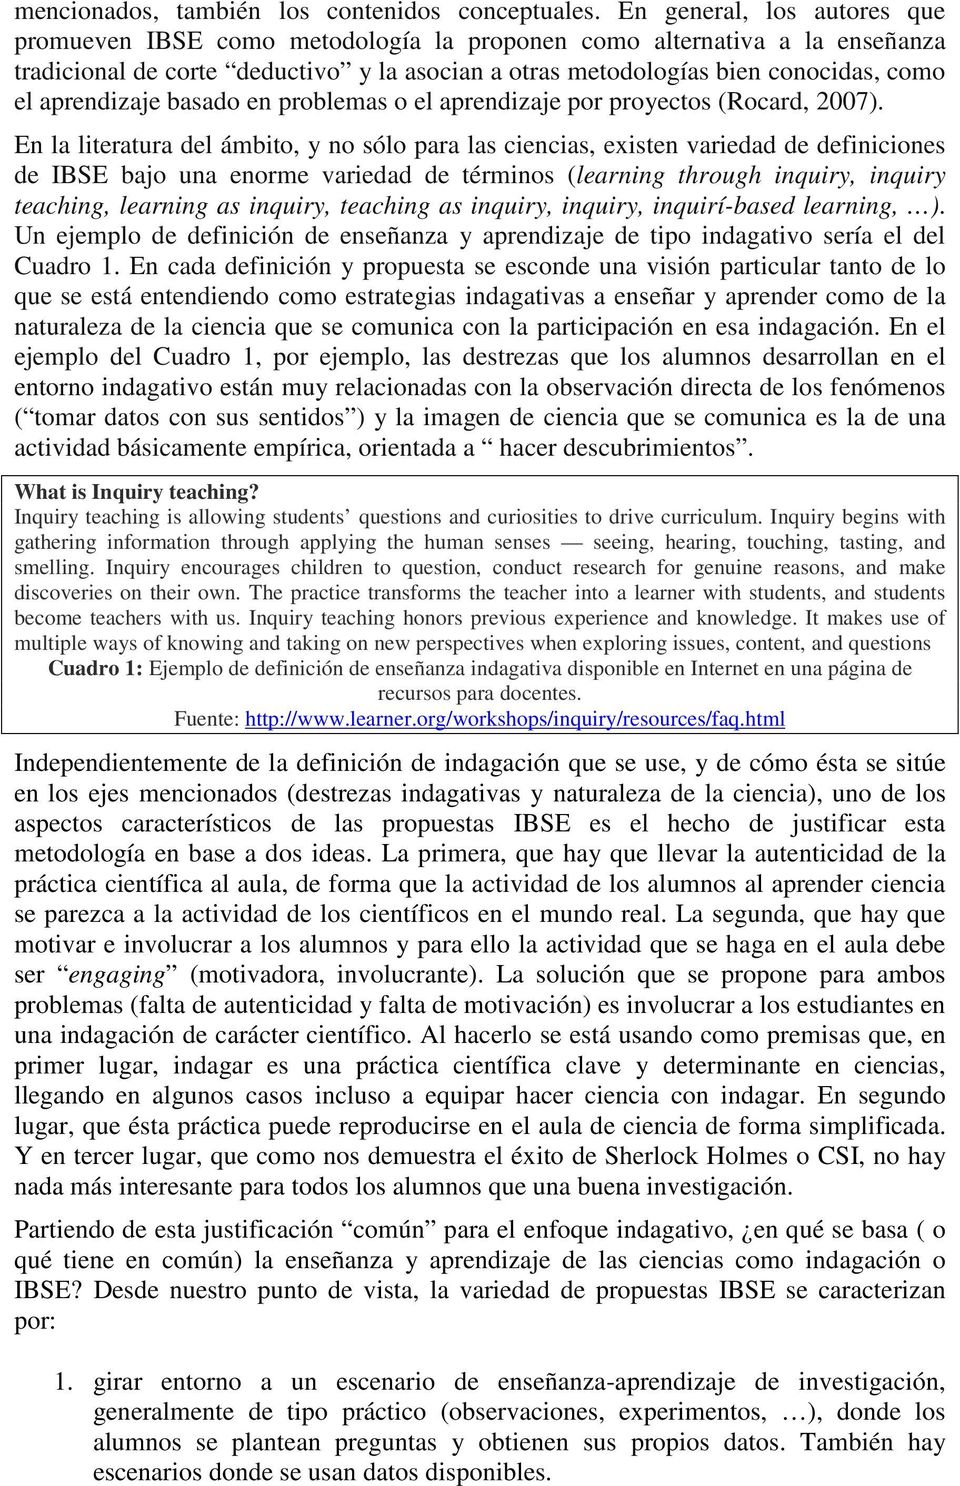 aprendizaje basado en problemas o el aprendizaje por proyectos (Rocard, 2007).